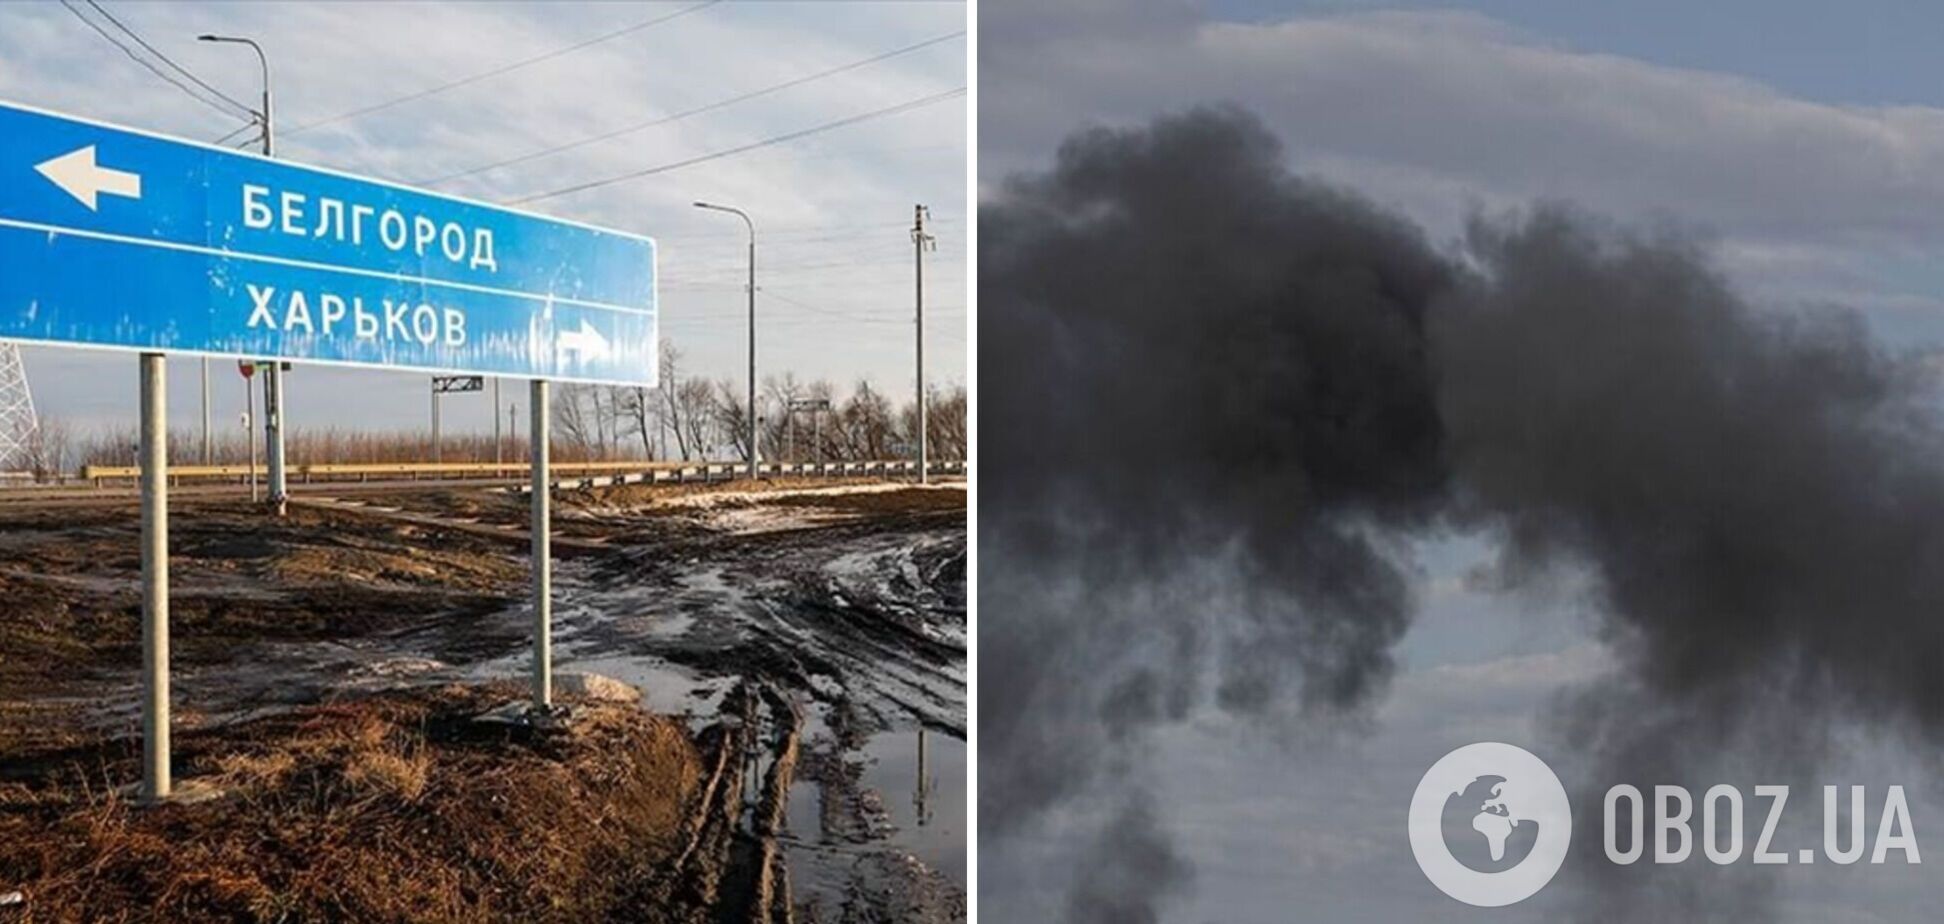 У мережі повідомили про падіння літака у Бєлгородській області РФ (фото ілюстративне)